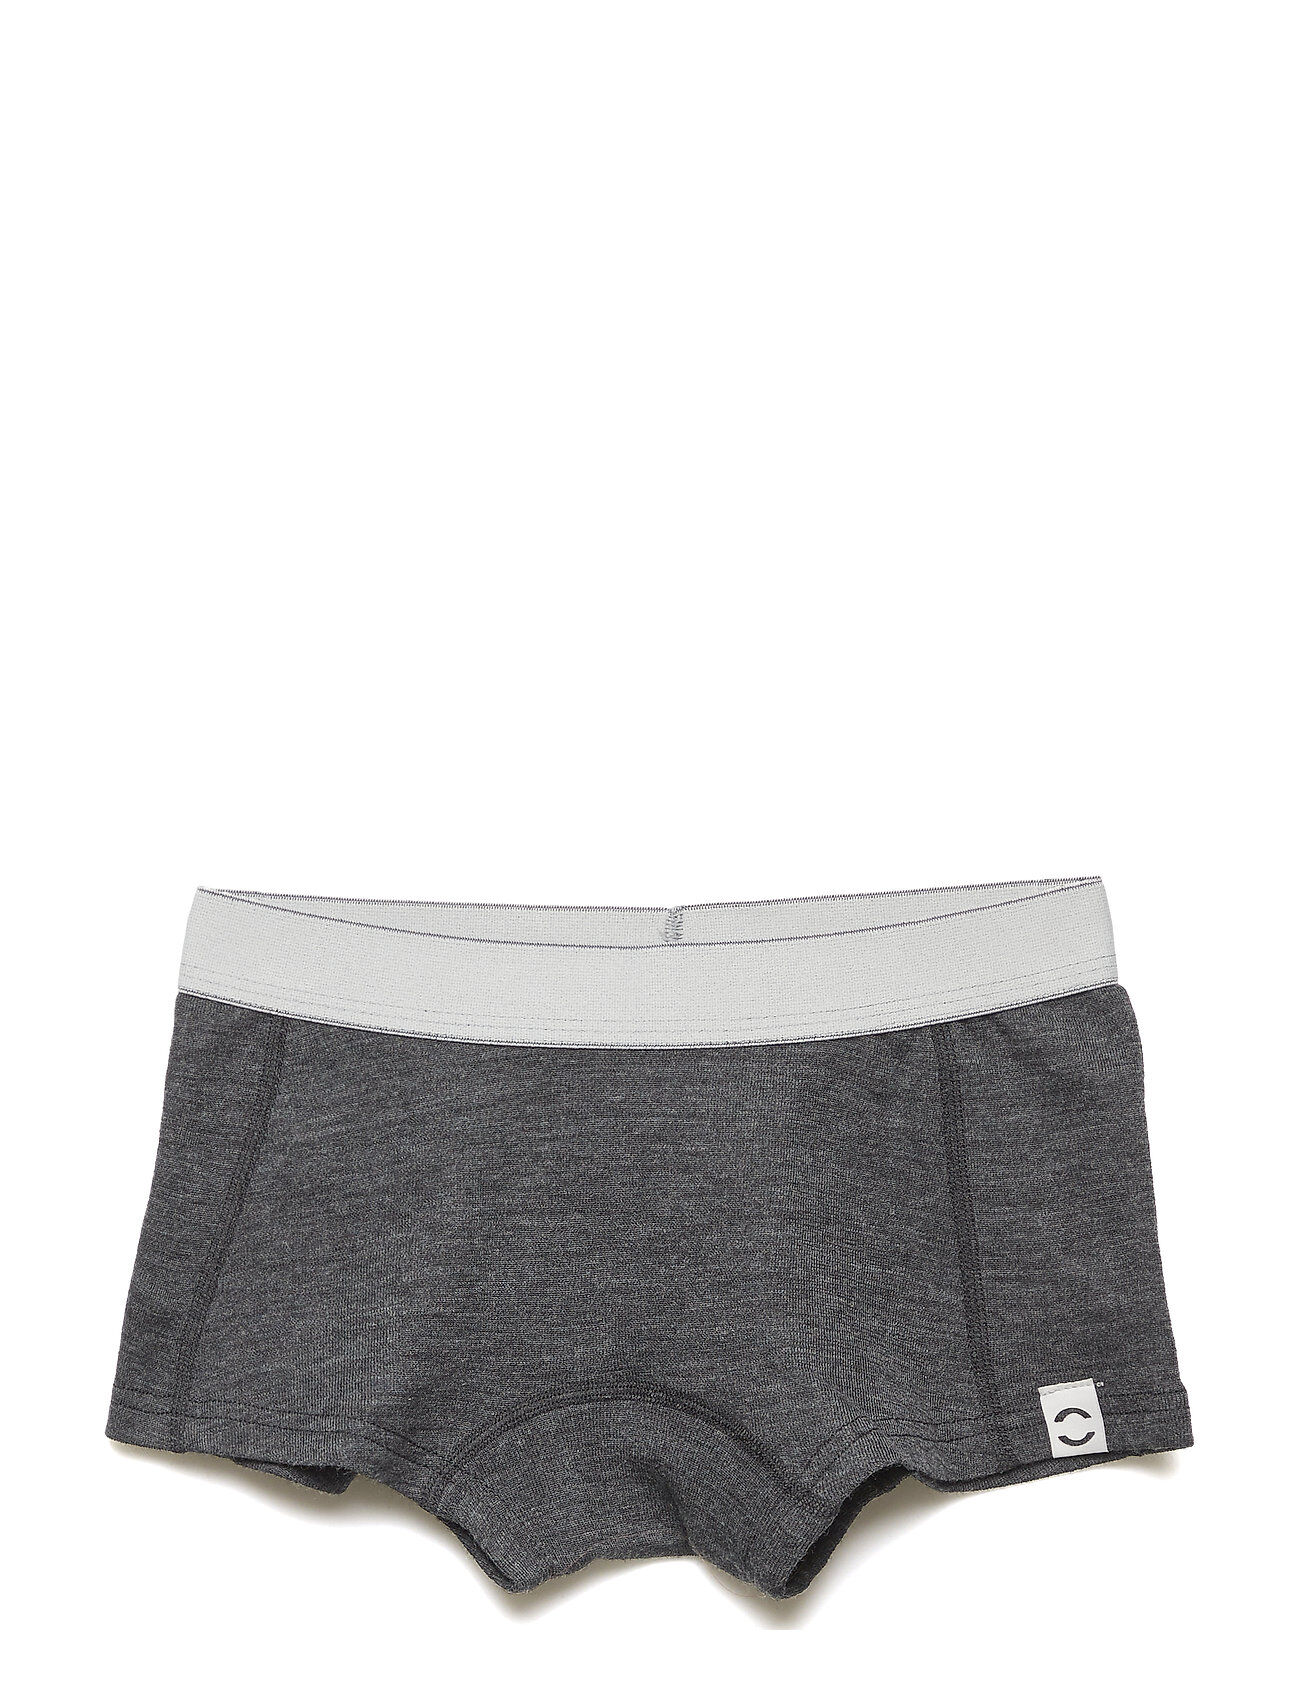 Mikk-Line Wool Girls Shorts Night & Underwear Underwear Panties Grå Mikk-Line